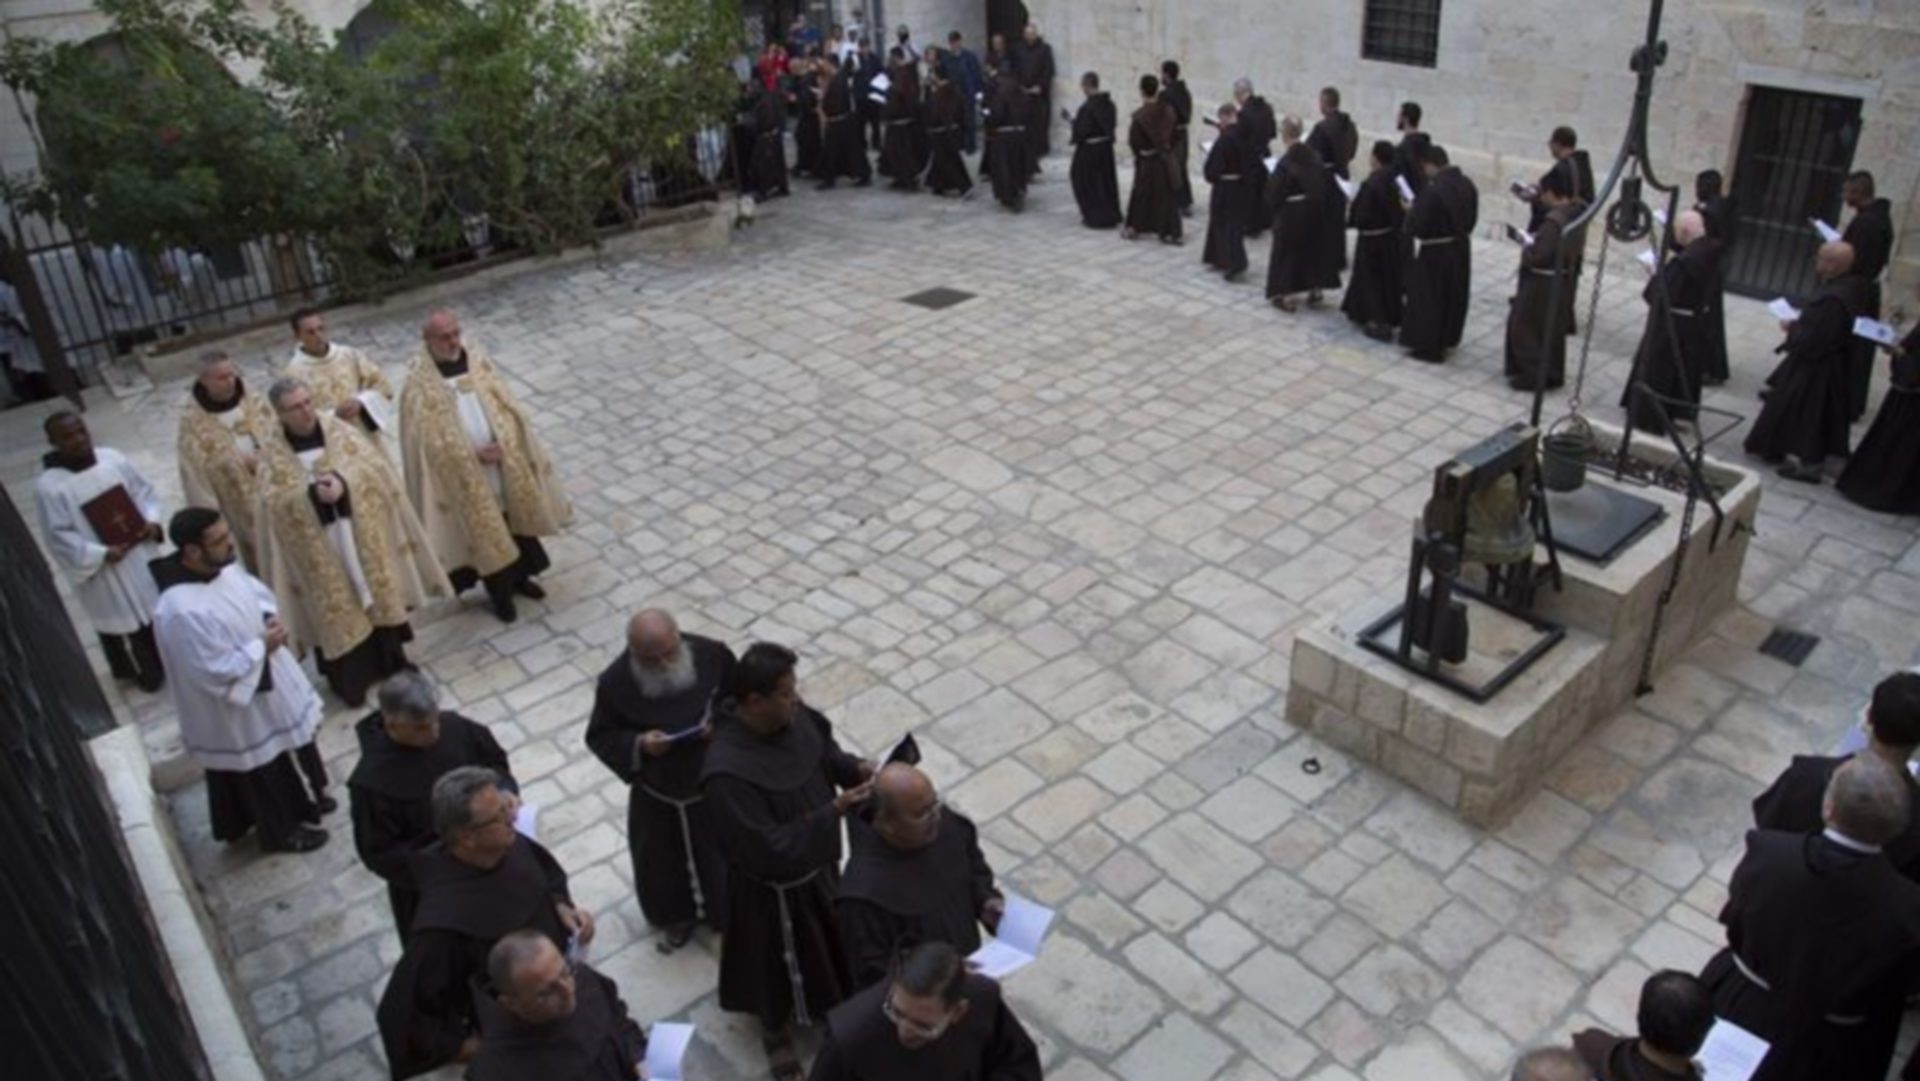 Les franciscains célèbrent 800 ans de présence en Terre Sainte (custodia.org)